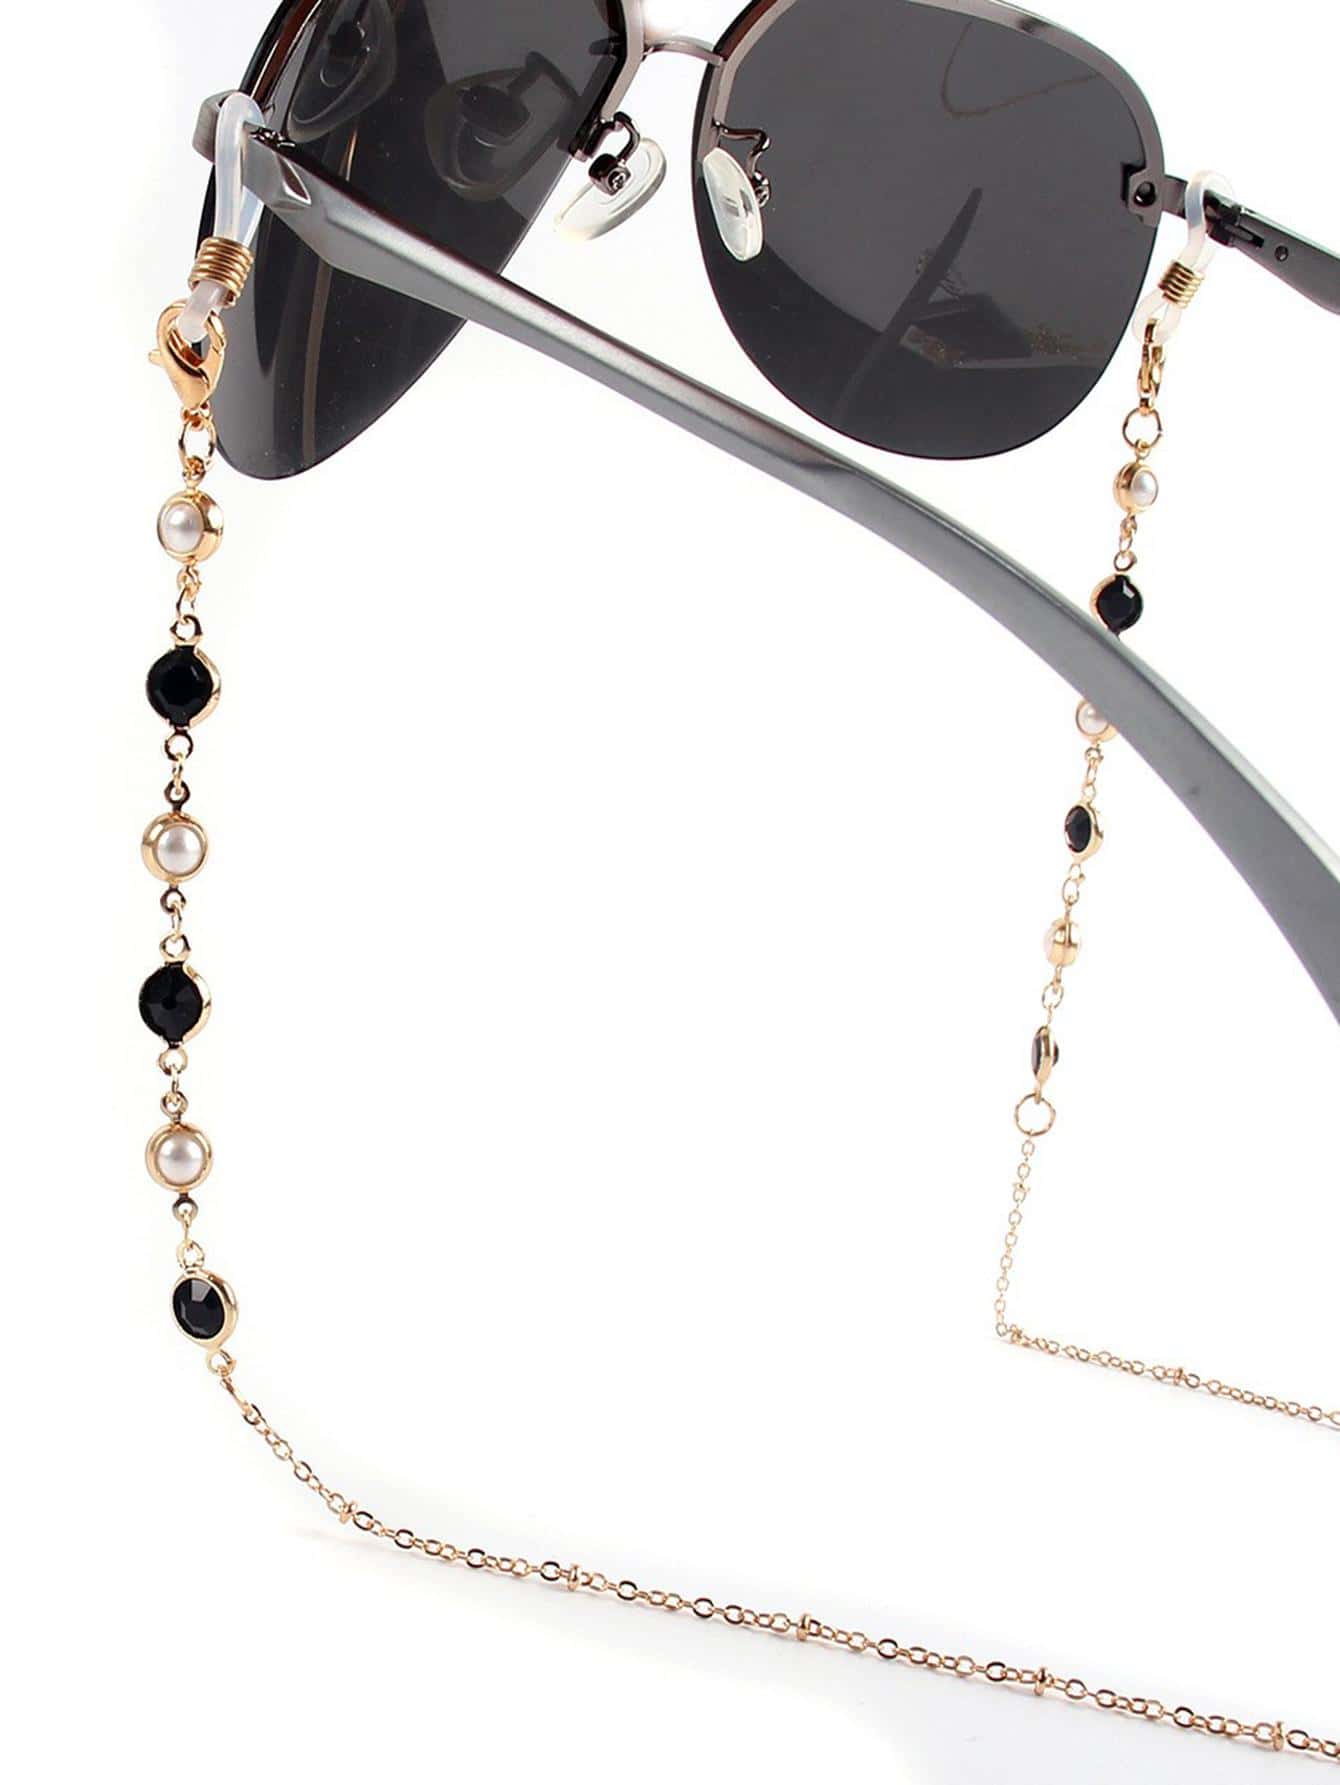 1шт женщин искусственный драгоценный камень жемчуг декор модные очки цепочка для украшения очков, золото